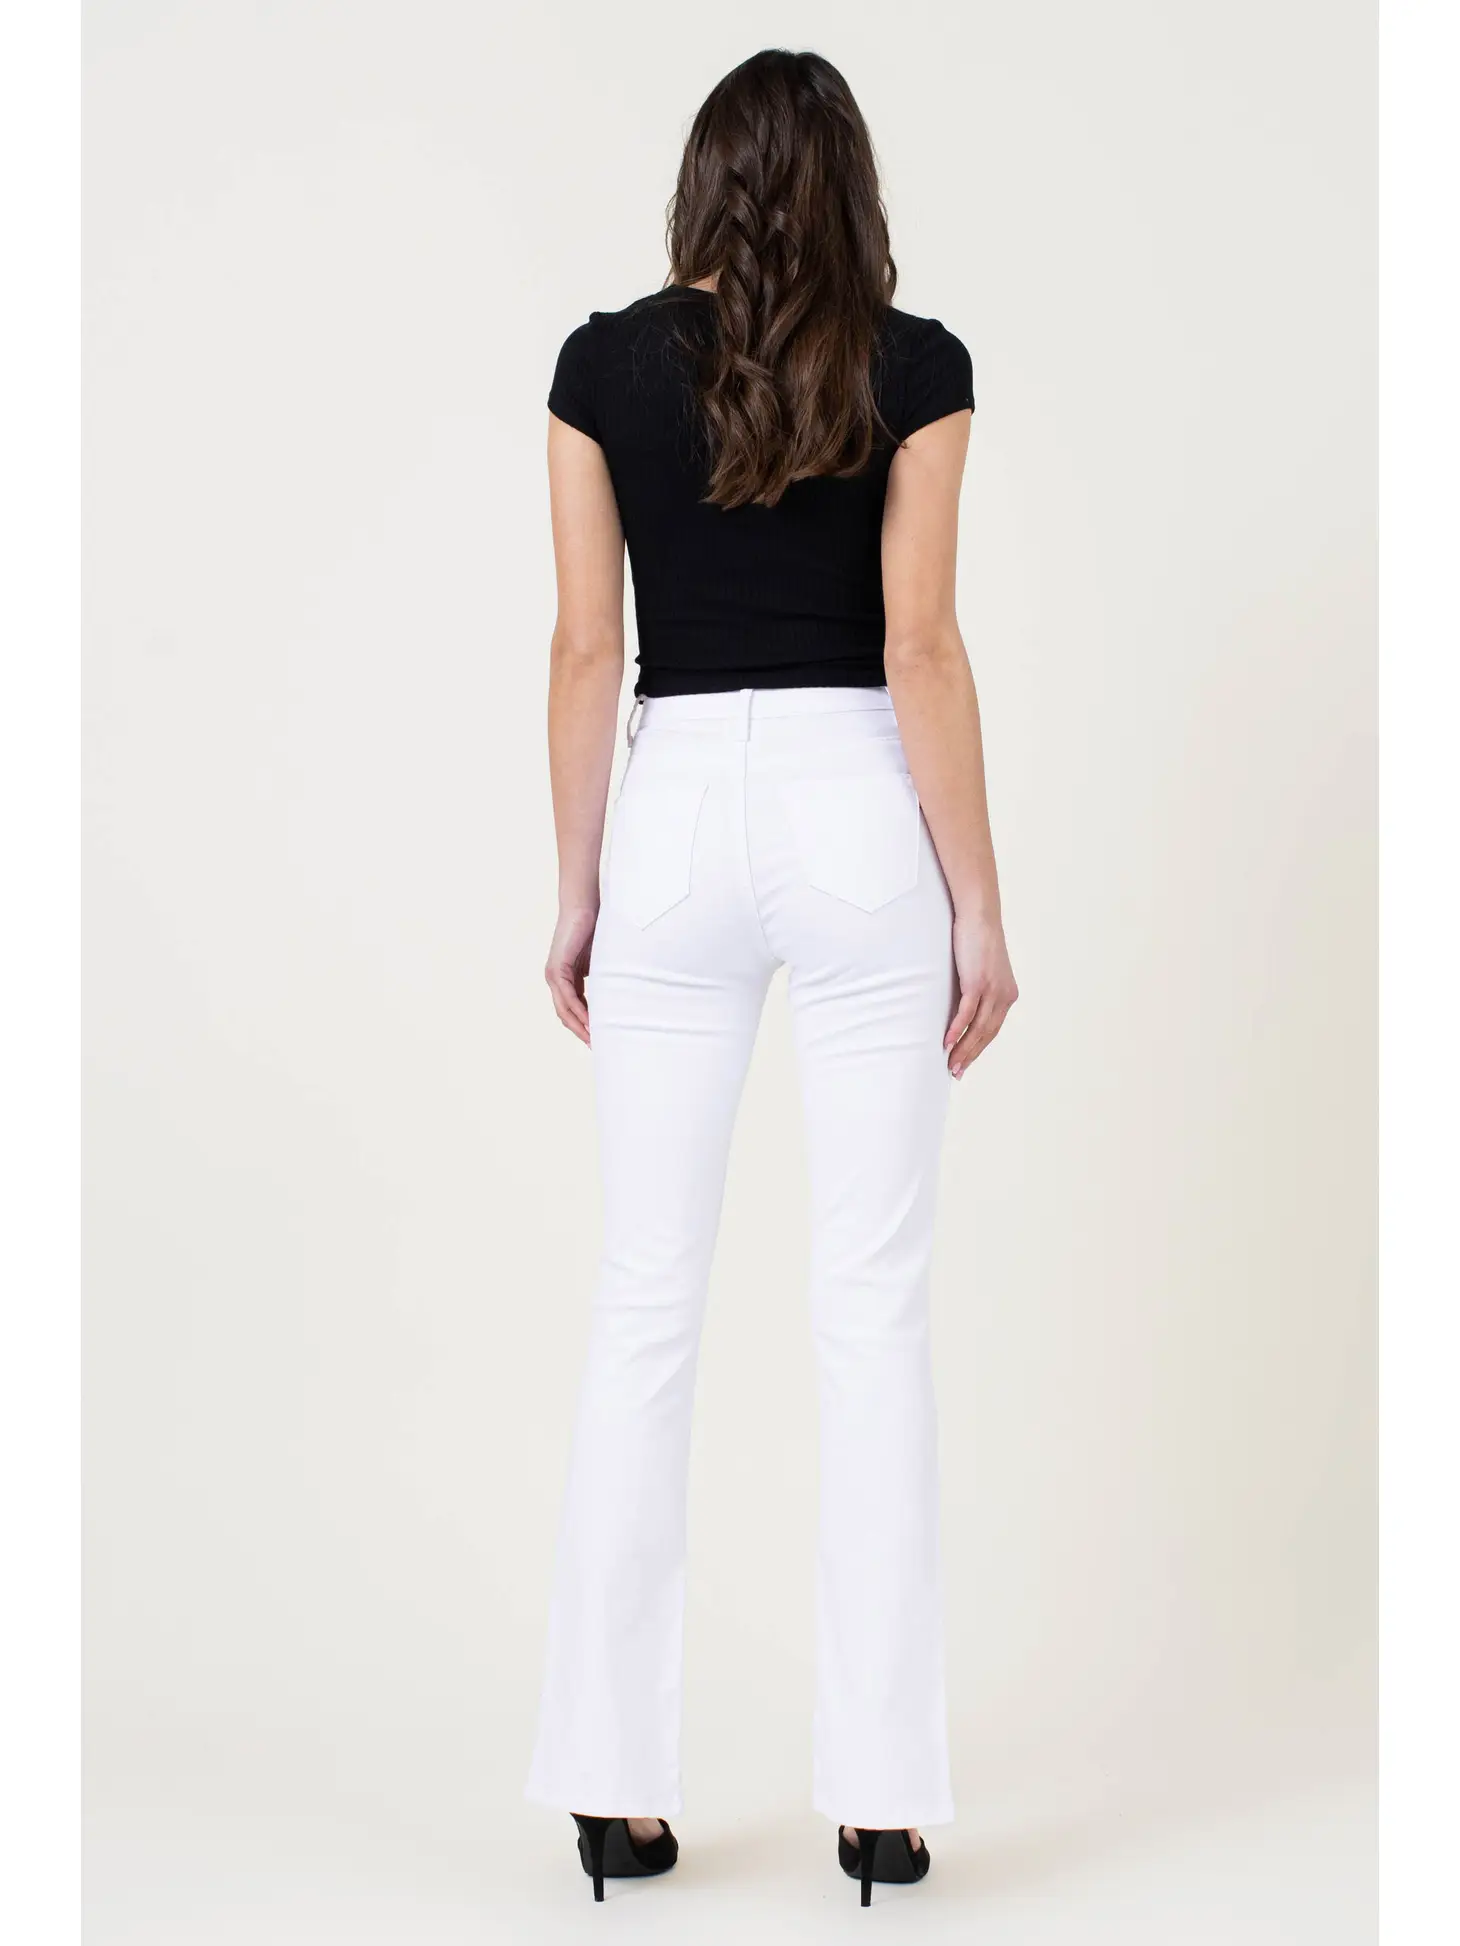 White front slit jeans